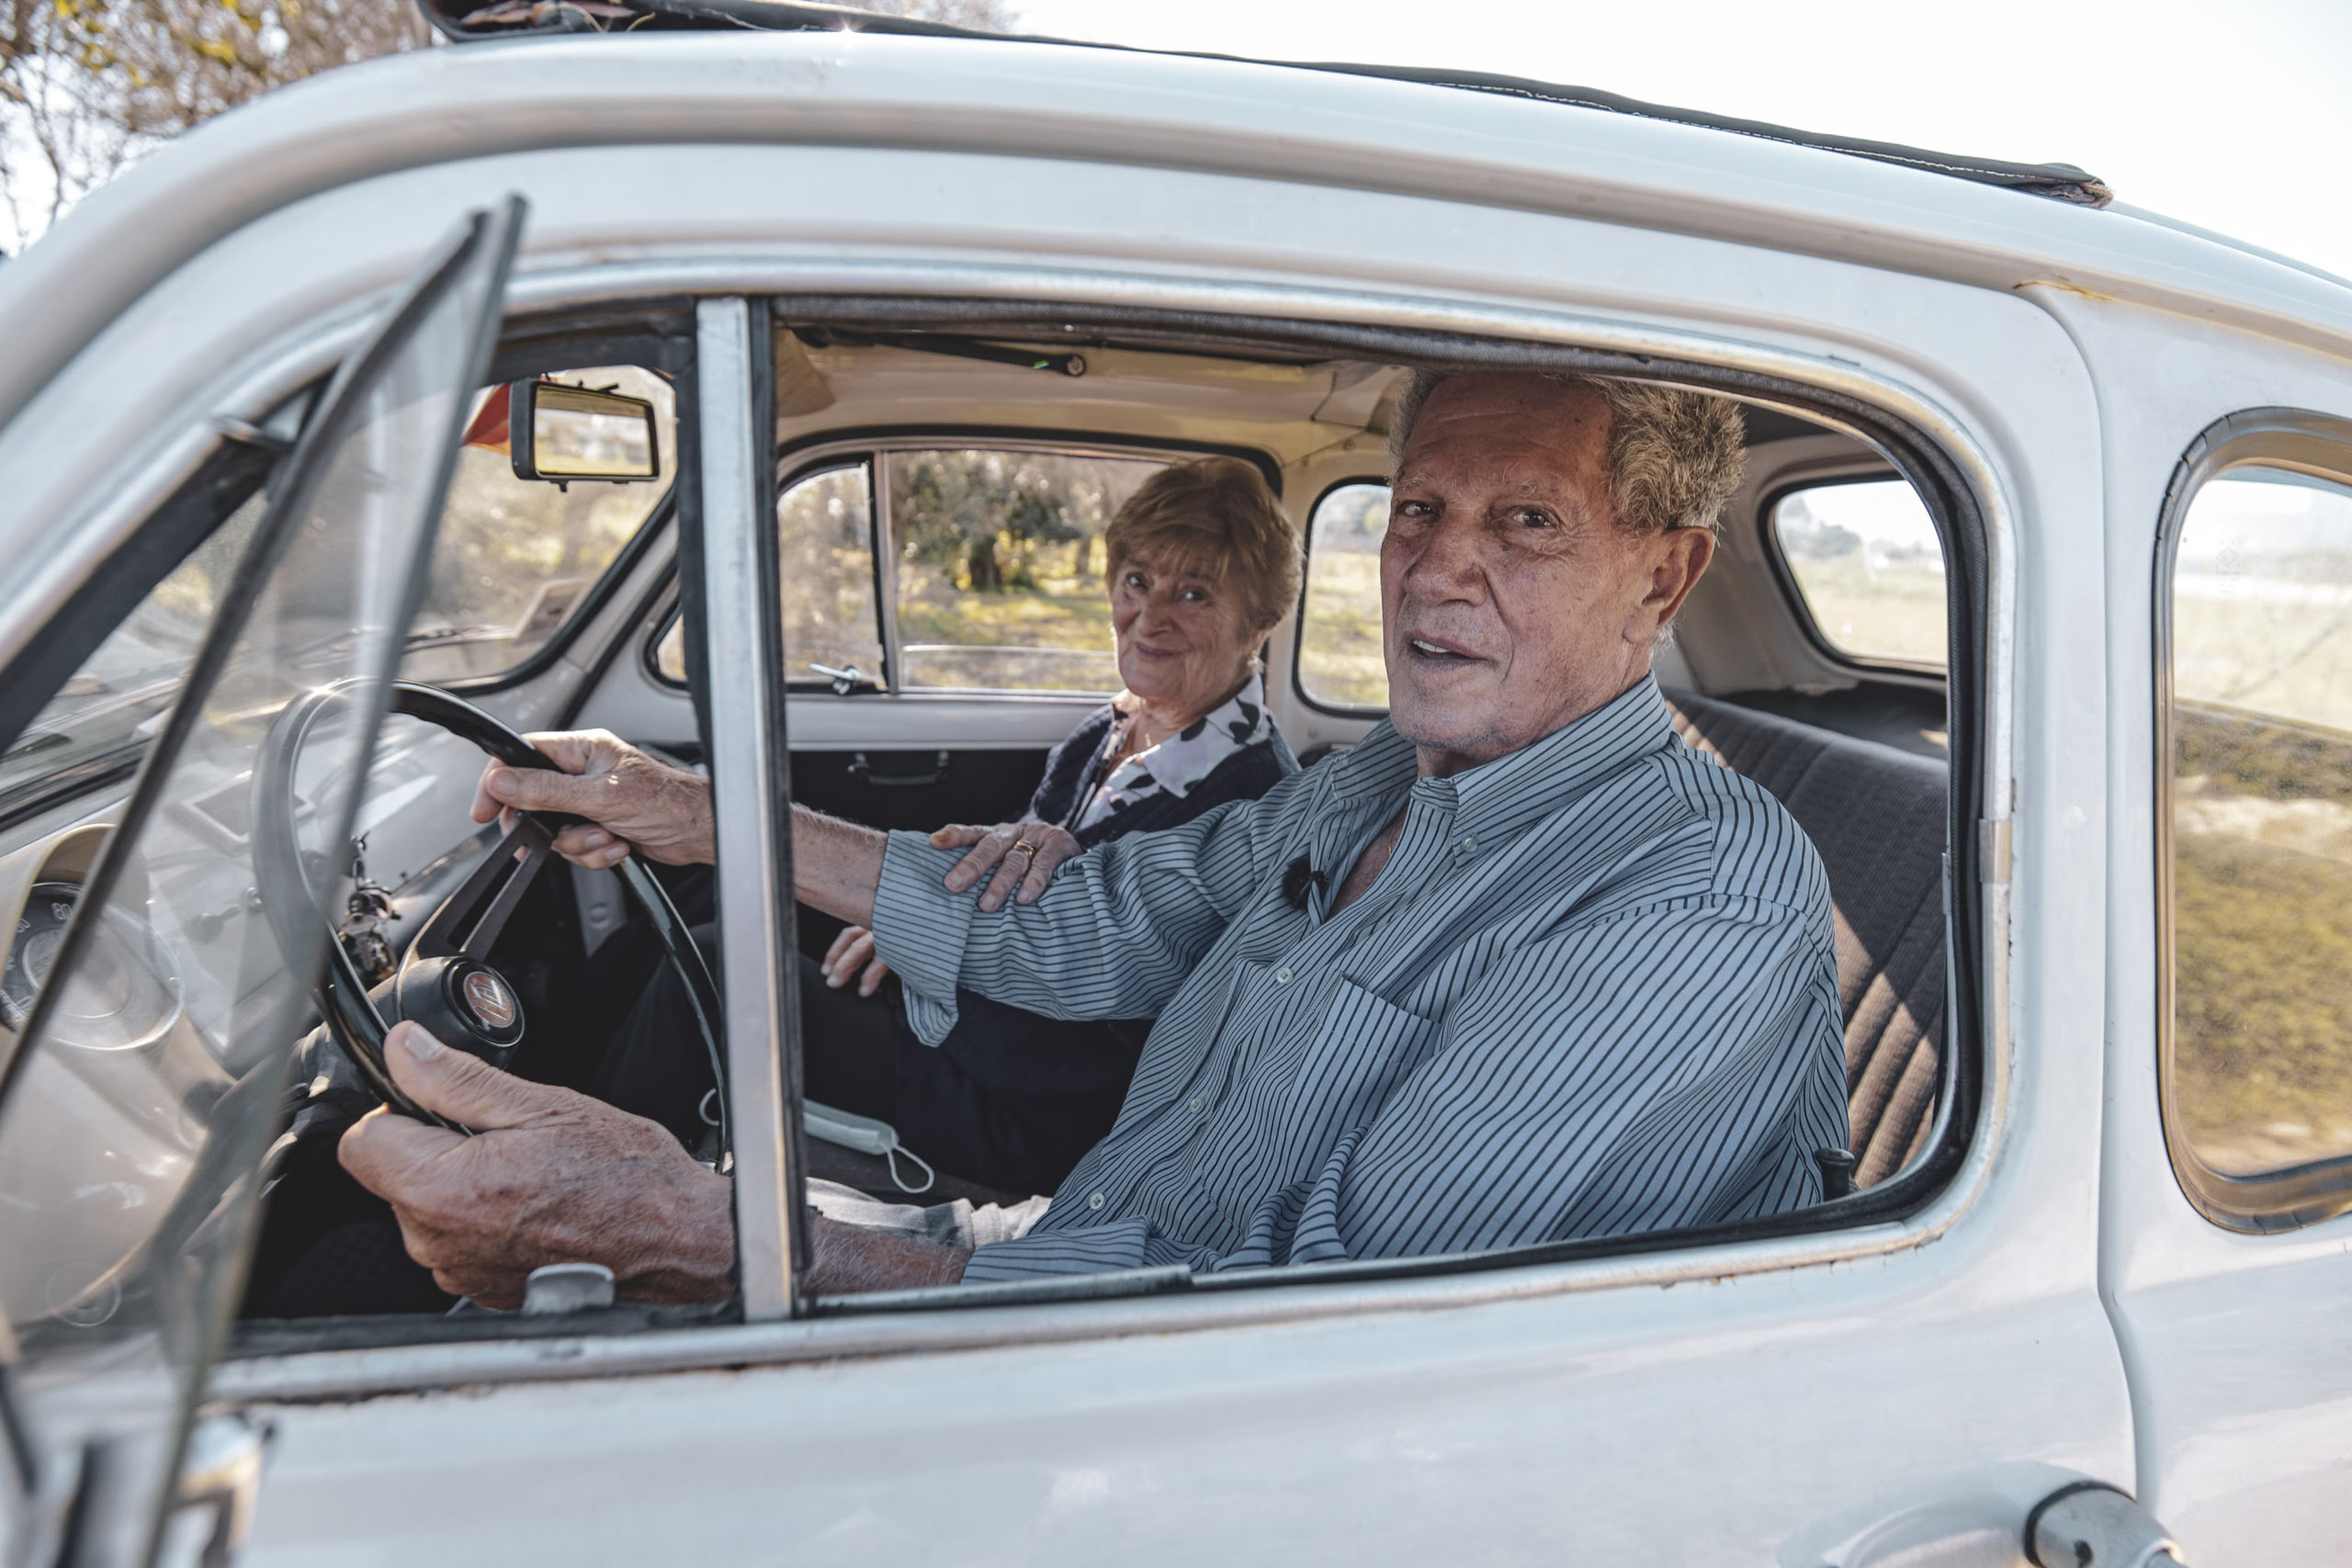 Ein älteres Paar sitzt glücklich in einem altmodischen Auto, wobei der Mann fährt und die Frau auf dem Beifahrersitz sitzt und aus dem Fenster schaut. Sie sind von einer sonnigen, natürlichen Landschaft umgeben. © Fotografie Tomas Rodriguez